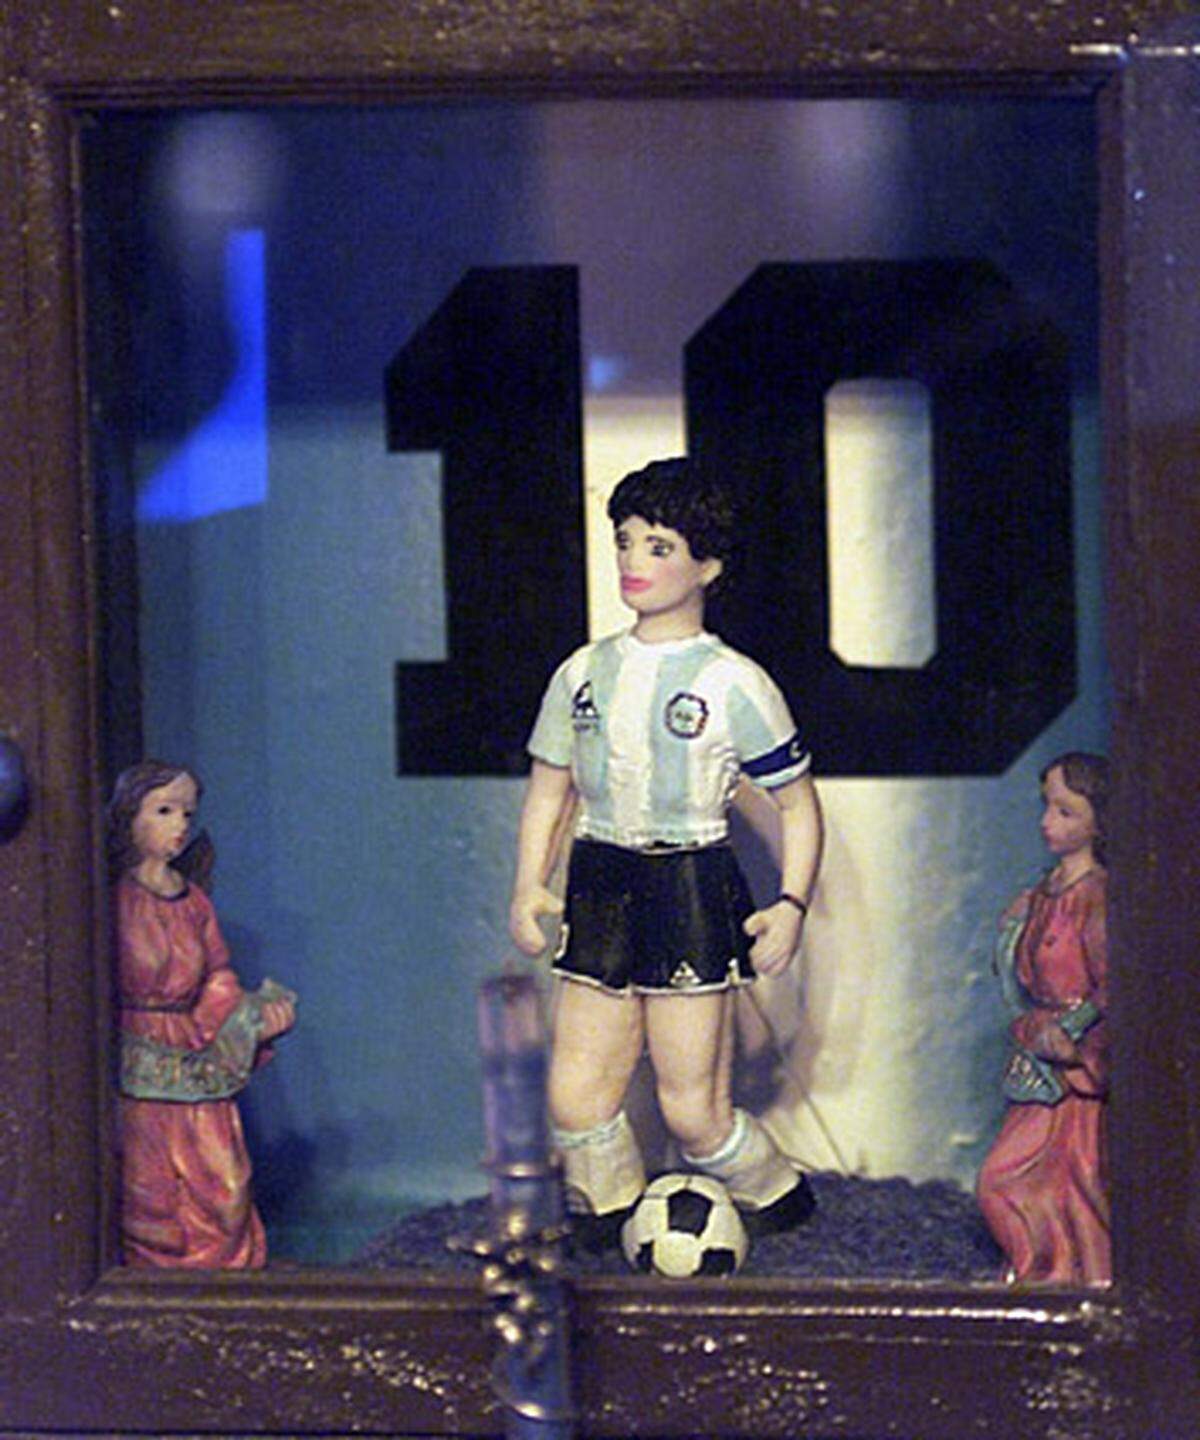 Seine Fans hatten ihn sowieso nie vergessen: Sie gründeten zu Ehren des "Fußballgottes" Diego Maradona seine eigene Kirche: Zu den zehn Geboten der "Iglesia Marodoniana" (Maradona-Kirche) gehört etwa "Liebe das Fußballspiel über alles" und "Sei kein Dickkopf und lass die Schildkröte nicht entkommen." In dieser Kirche wird D10S verehrt (spanisches Wortspiel: Dios = Gott, 10 war die Nummer auf Maradonas Trikot), am 30. Oktober, dem Geburtstag Maradonas, wird in der Iglesia Maradoniana "Weihnachten" gefeiert.